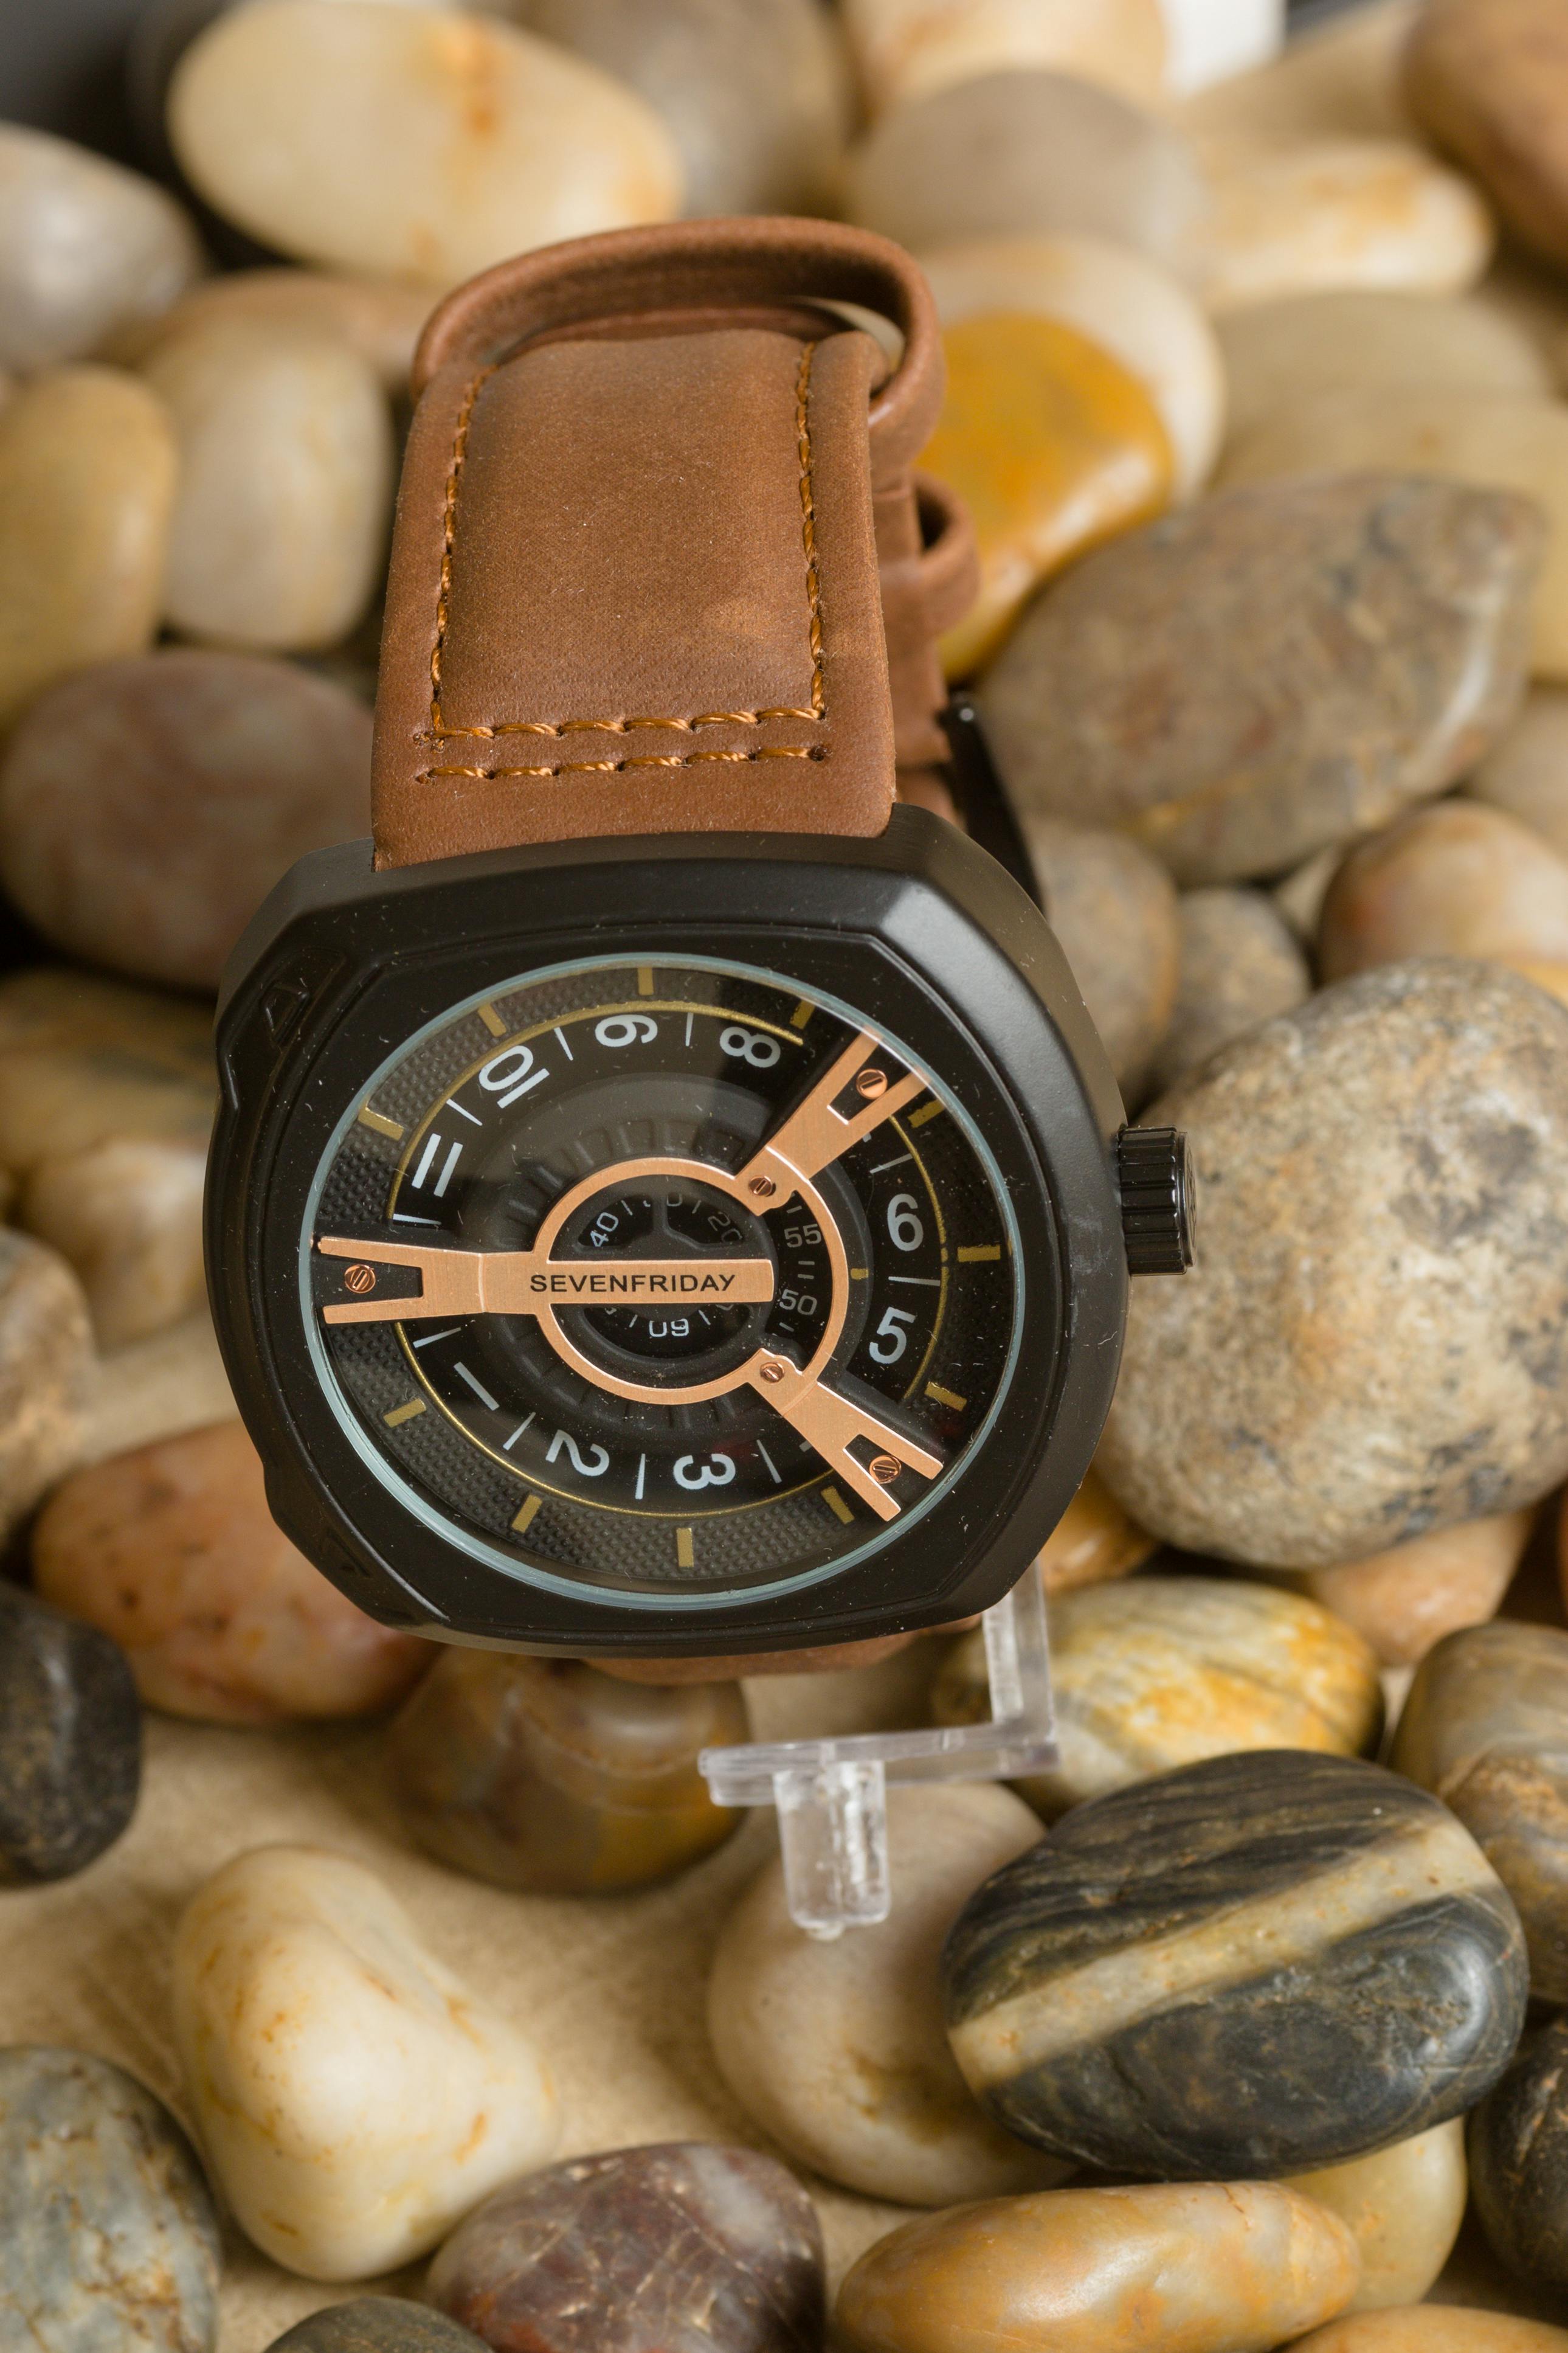 Top Wrist Watch Dealers in Raichur - Best Wrist Watch Store - Justdial